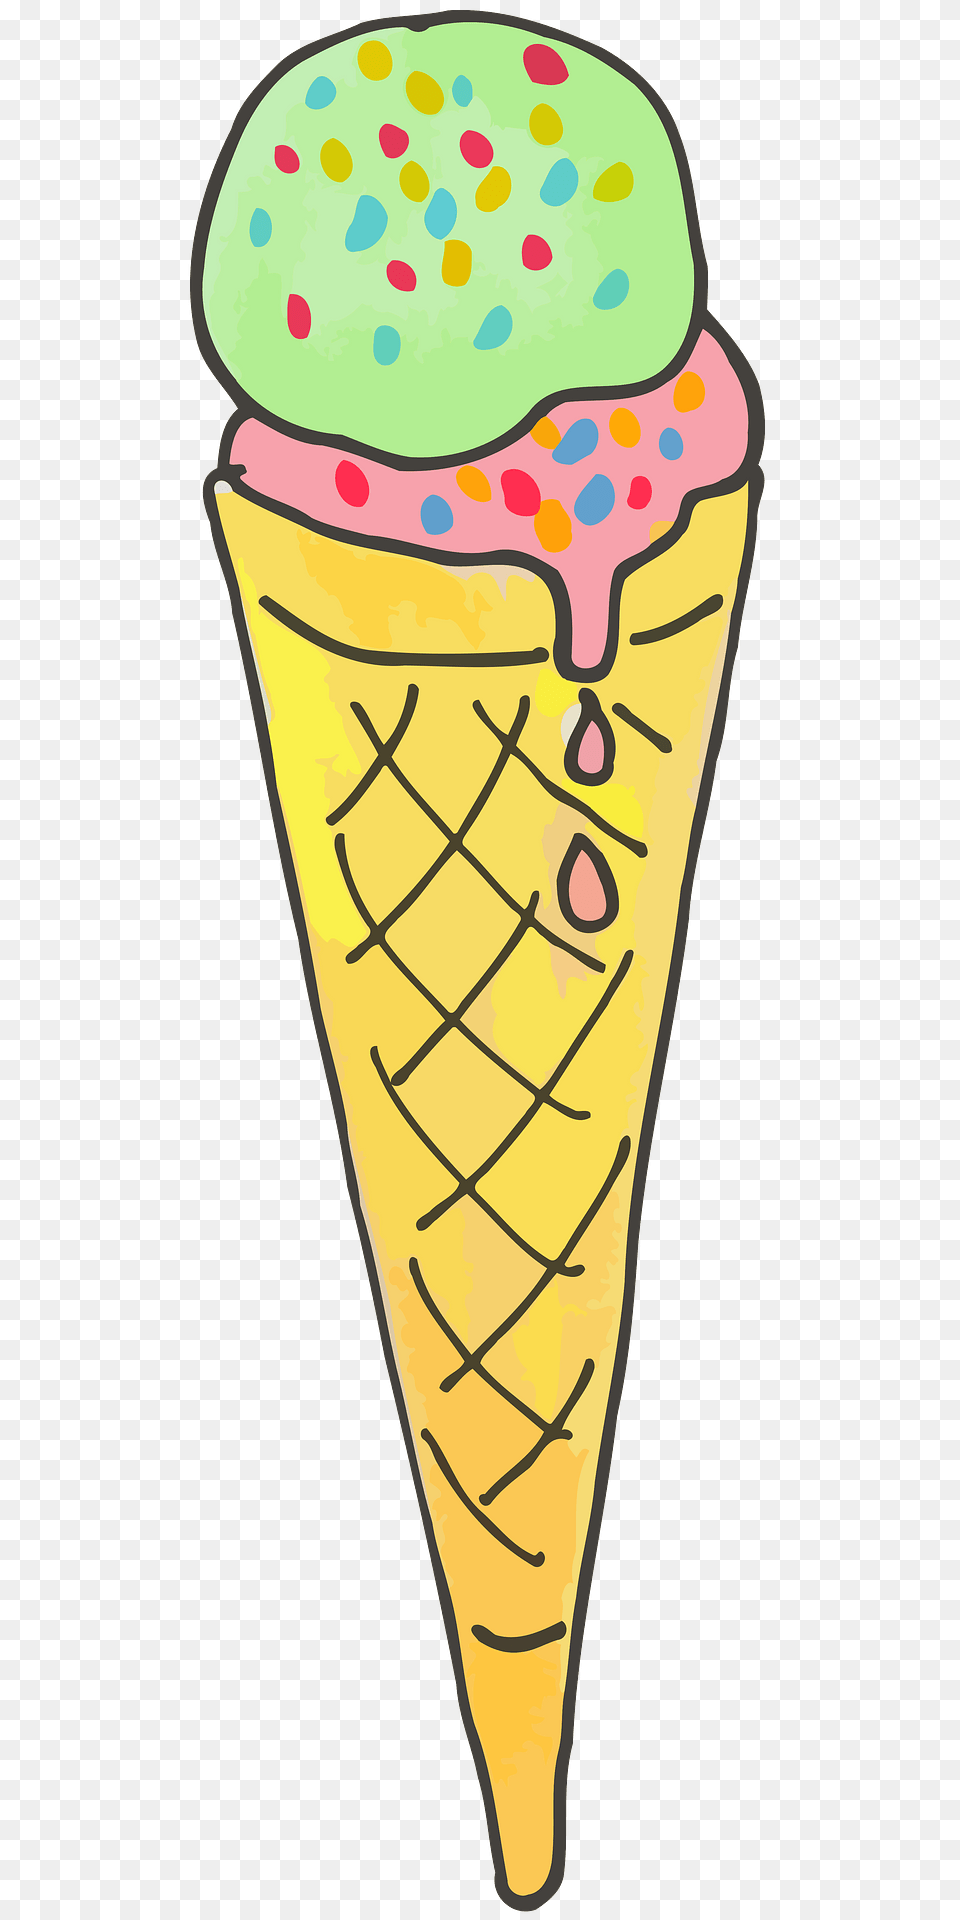 Ice Cream Cone Clipart, Dessert, Food, Ice Cream Free Png